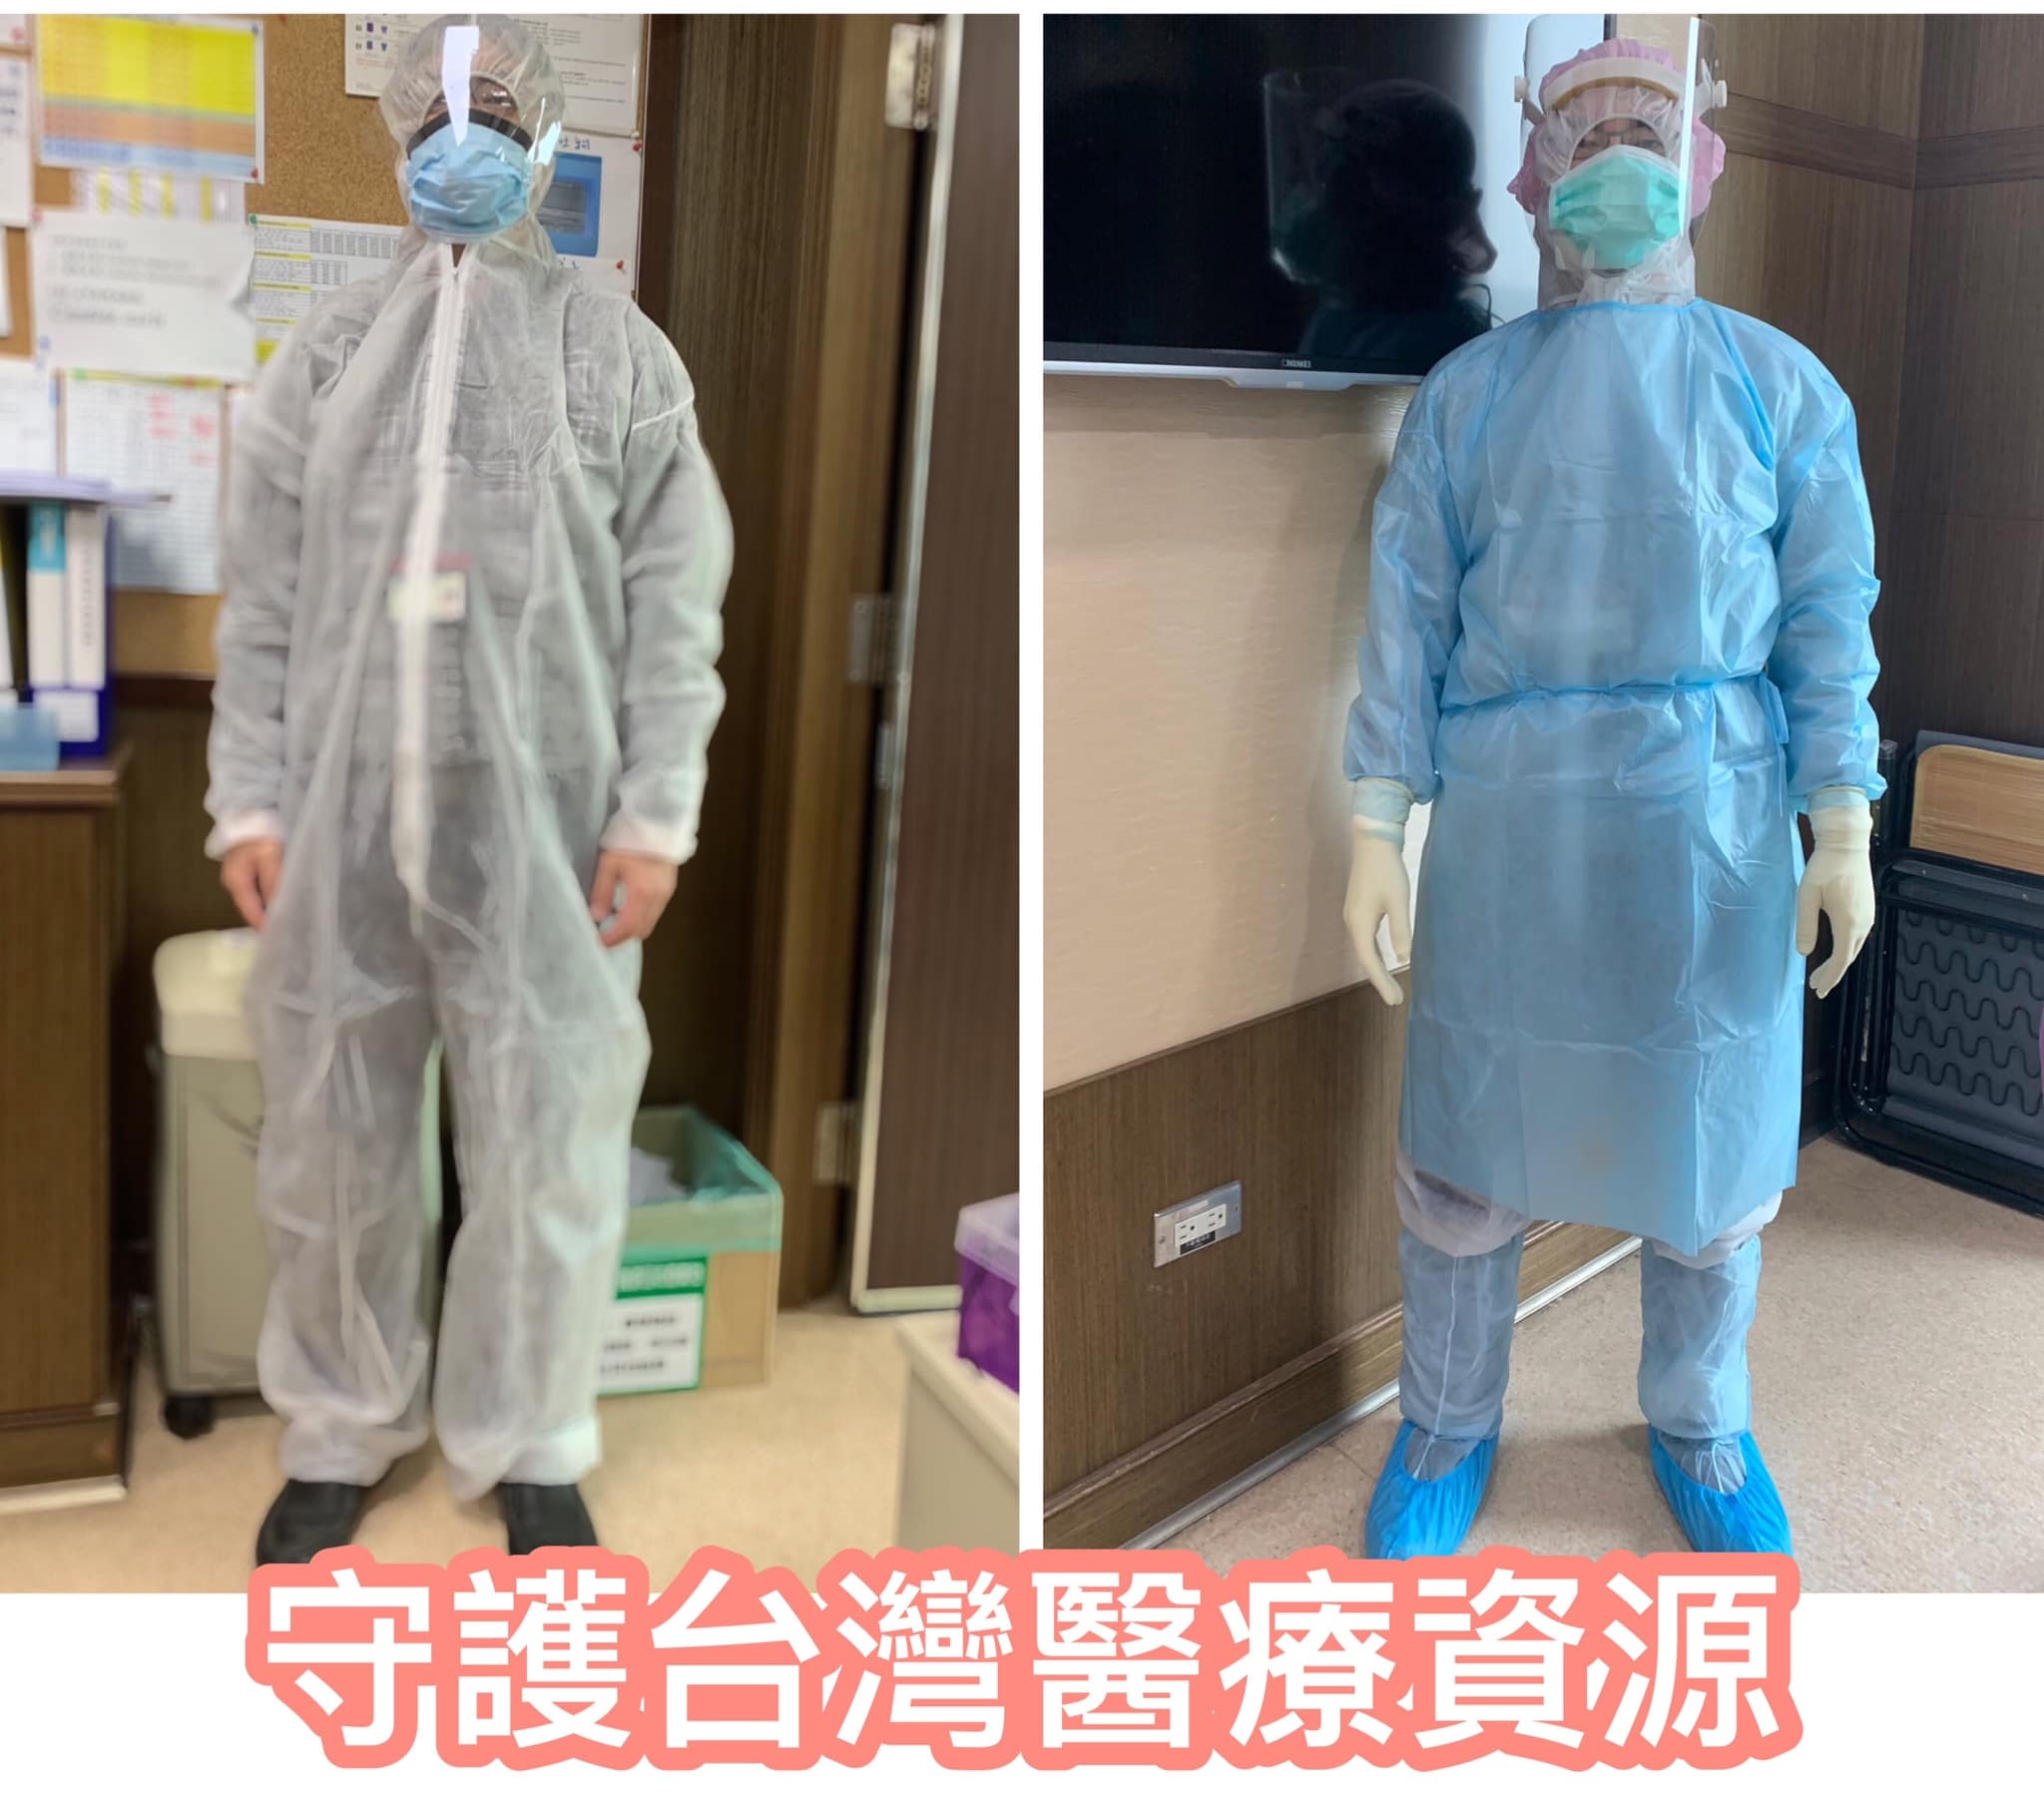 接回全數包機台灣醫療資源會被消耗殆盡！女醫師籲守護台灣醫療資源-2019新型冠狀病毒